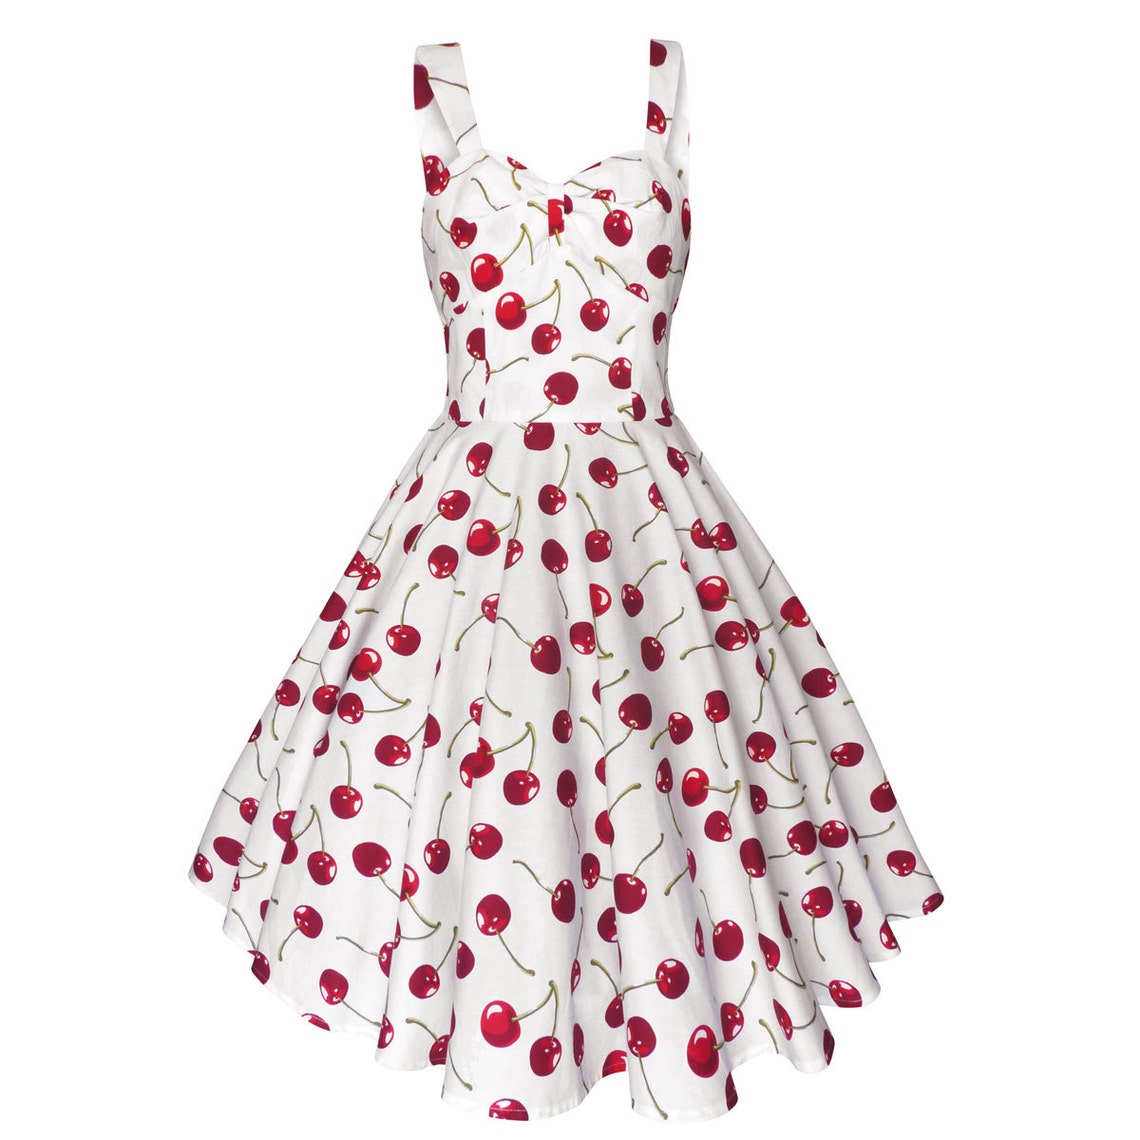 Red Cherry Dress Cherries Dress Summer Dress Rockabilly - Etsy